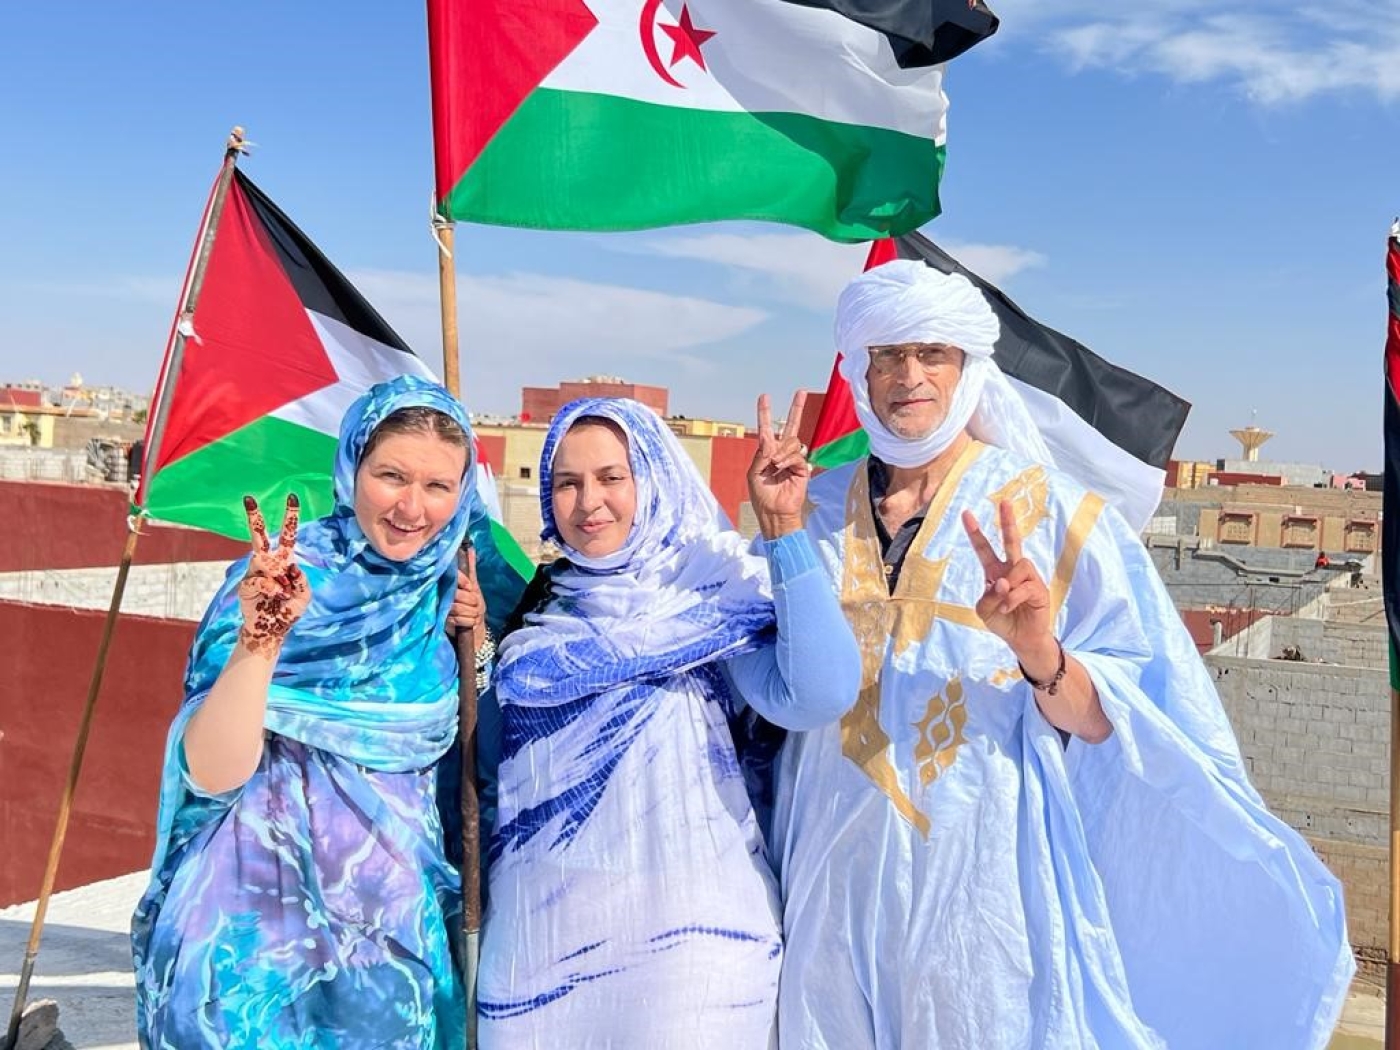 Ruth McDonough, Sultana Khaya et Tim Pluta sur le toit de la maison de Sultana Khaya à Boujdour, agitant le drapeau sahraoui (photo fournie)